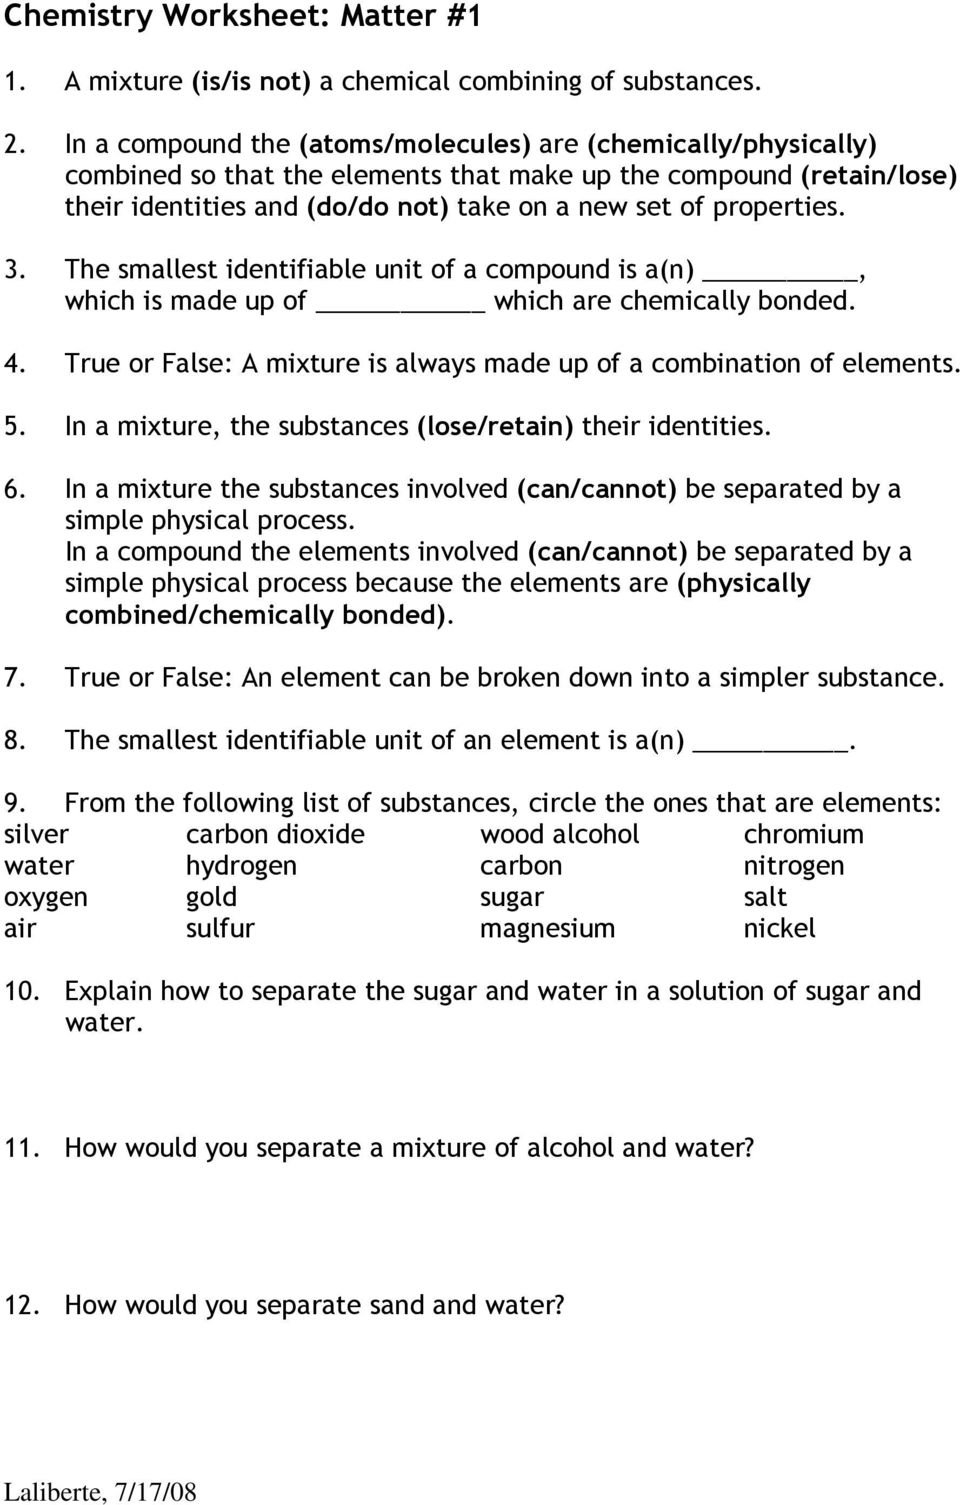 Chemistry Worksheet Matter 1  Pdf Within Chemistry Worksheet Matter 1